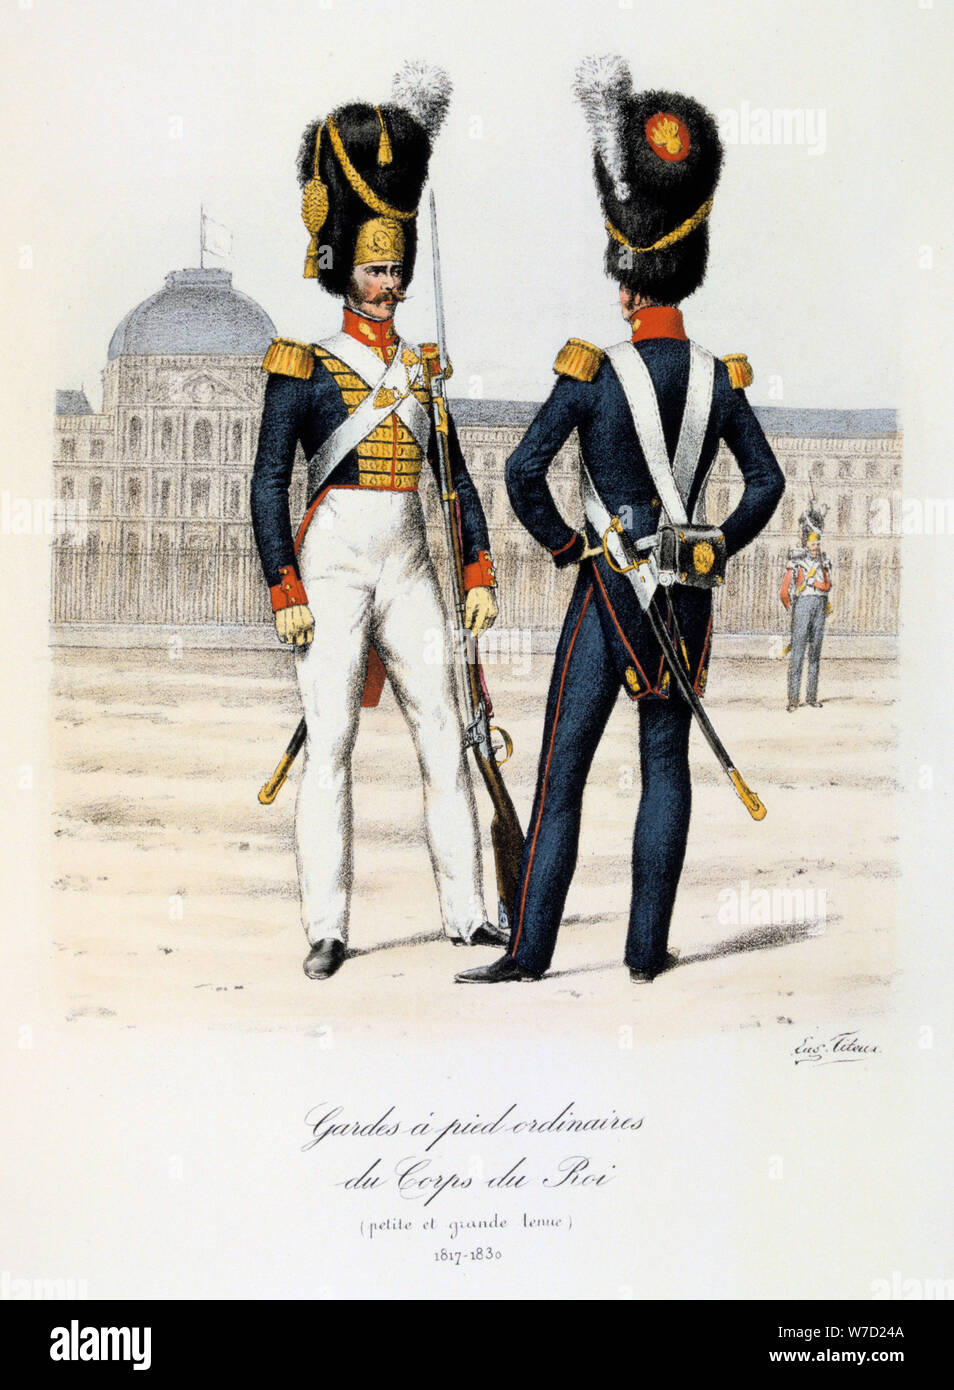 Gardes a pied ordinaires du Corps de Roi, petite and grande tenue, 1817-30 Artist: Eugene Titeux Stock Photo